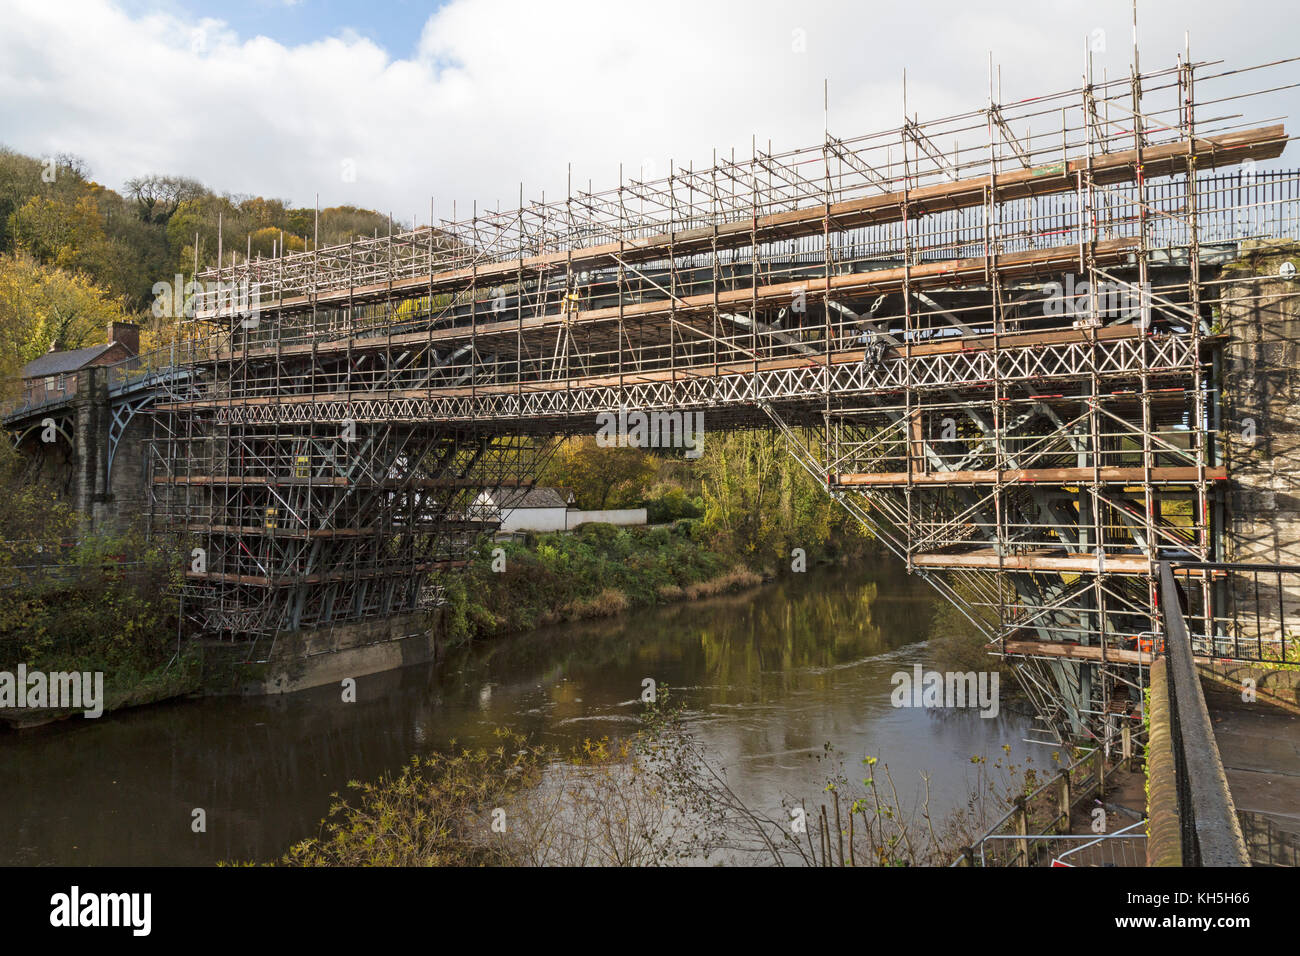 Le célèbre pont de fer dans la ville d'Ironbridge, dans le Shropshire, Angleterre, couverts d'échafaudages dans le cadre d'un projet de restauration de 1,2 M €, novembre 2017. Banque D'Images